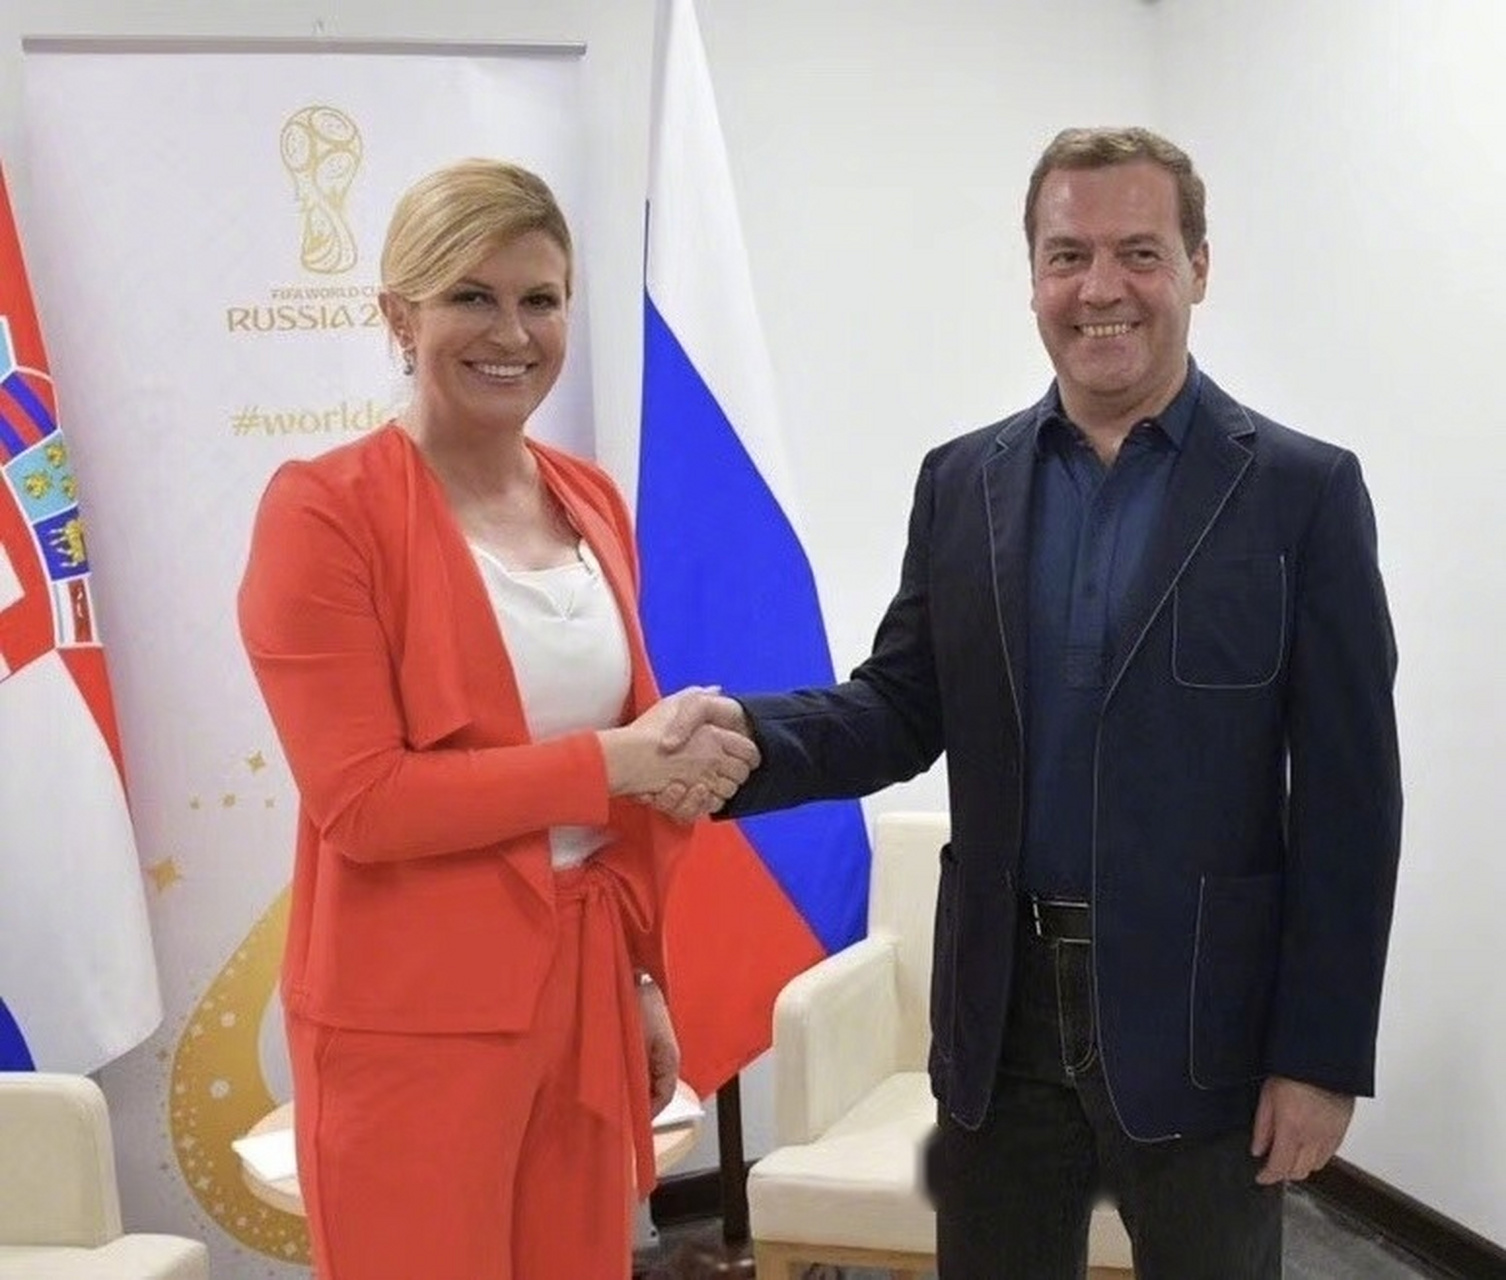 克罗地亚总统科琳达·格拉巴尔-基塔罗维奇身高173cm 俄总理小熊162